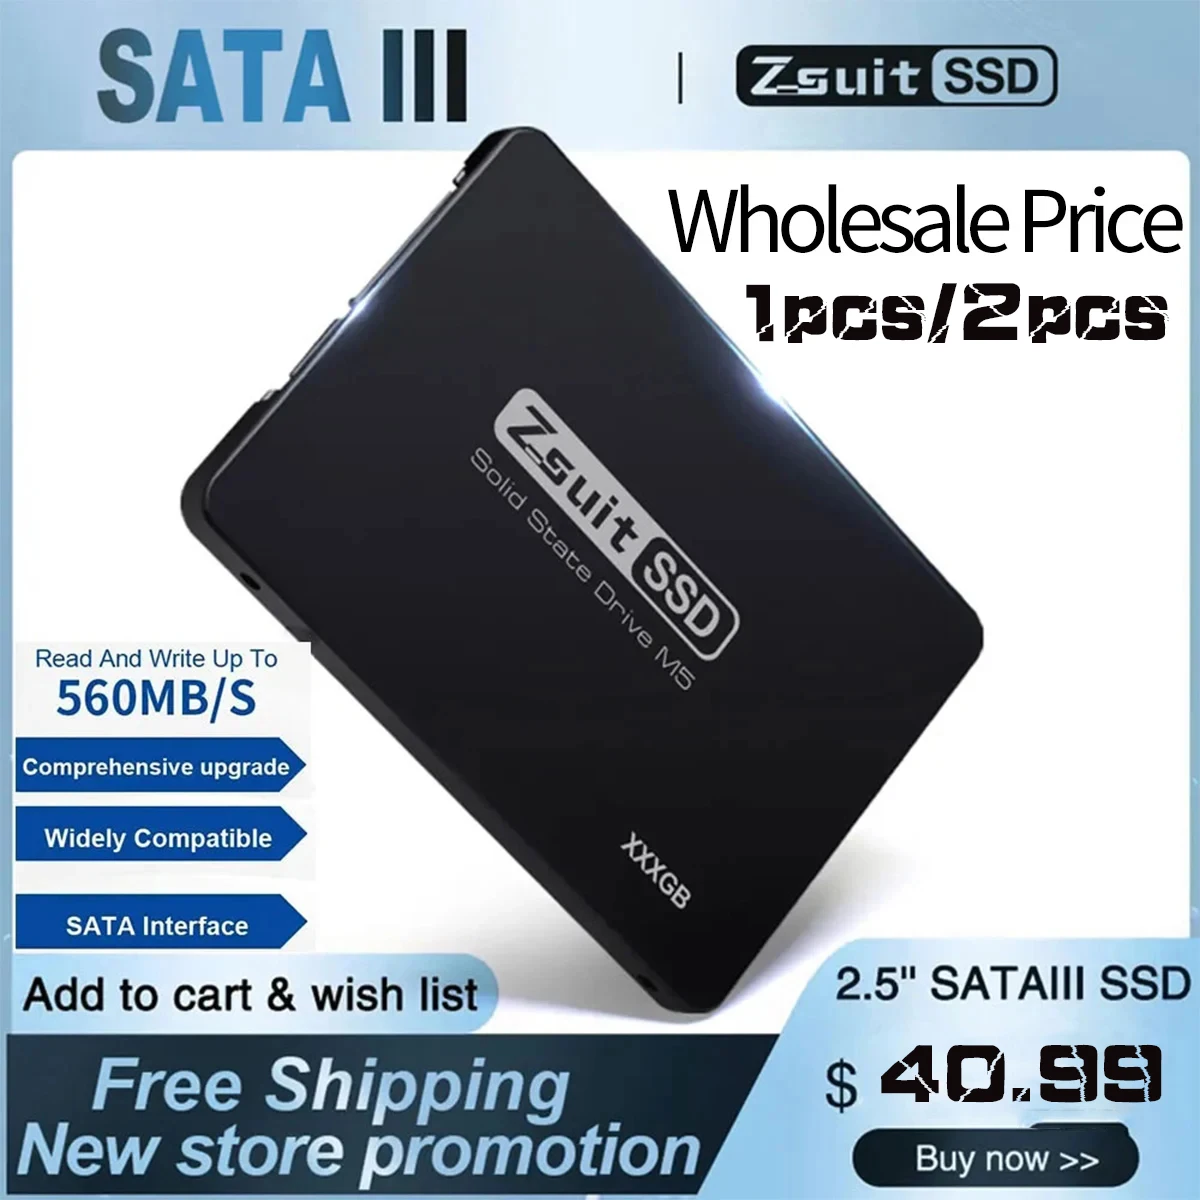 z-suit-disque-dur-ssd-smi25-de-haute-capacite-pour-ordinateur-portable-1-to-2-to-prix-de-gros-livraison-gratuite